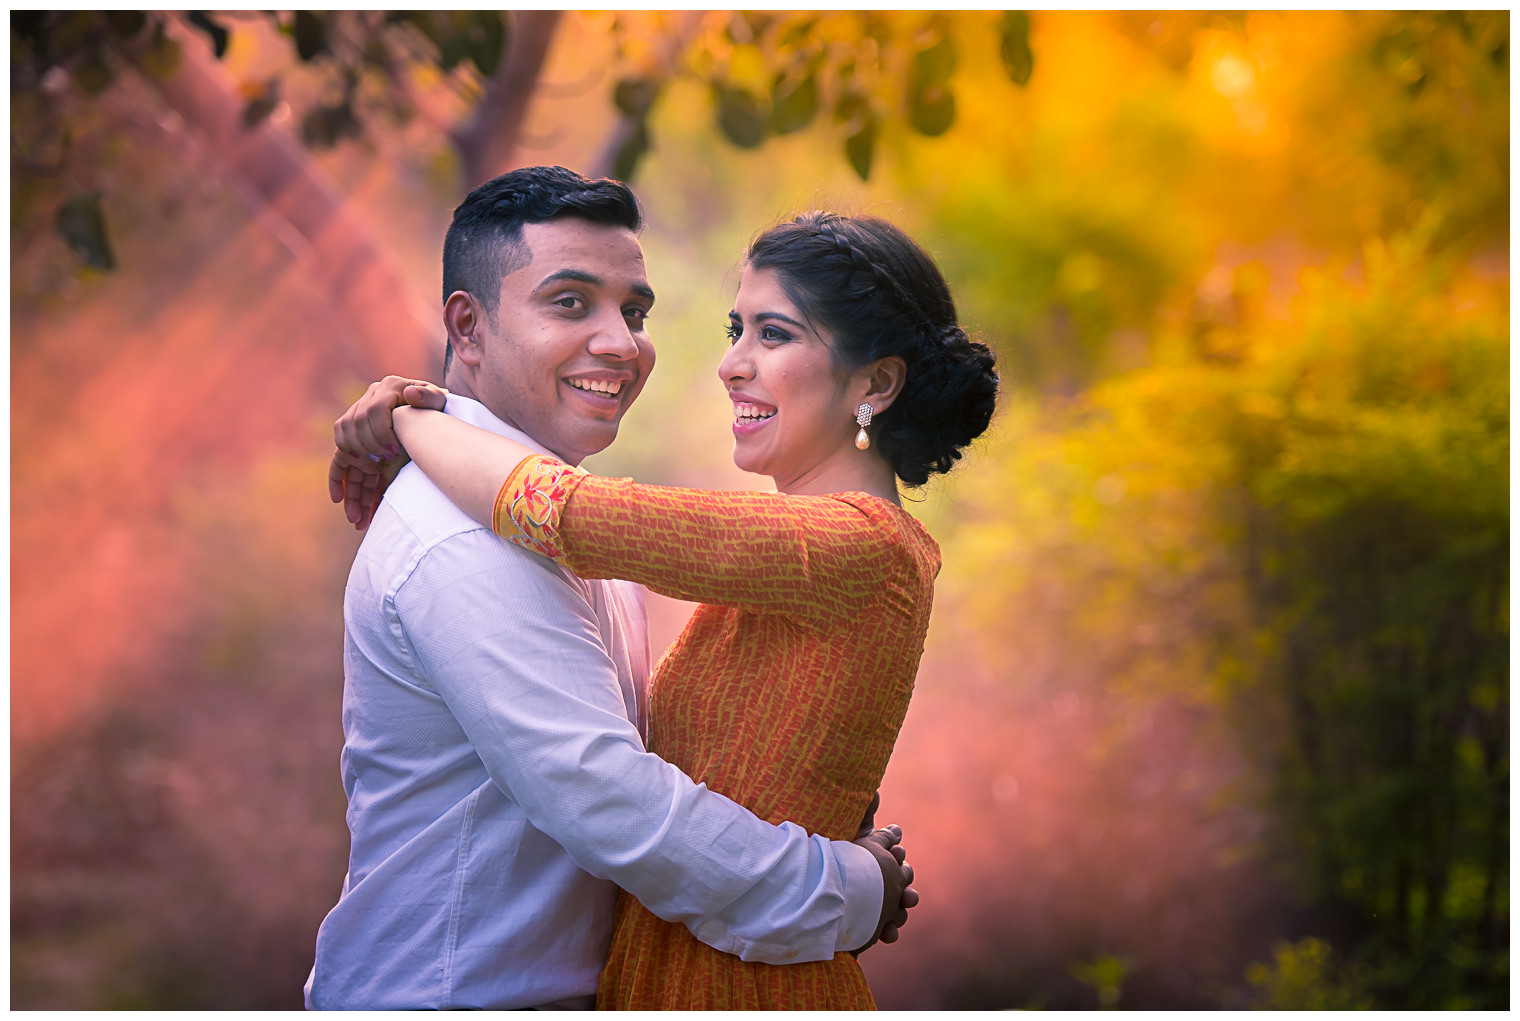 Couple Portrait Photography Images Chennai | Indian Wedding Couple Portrait  Images